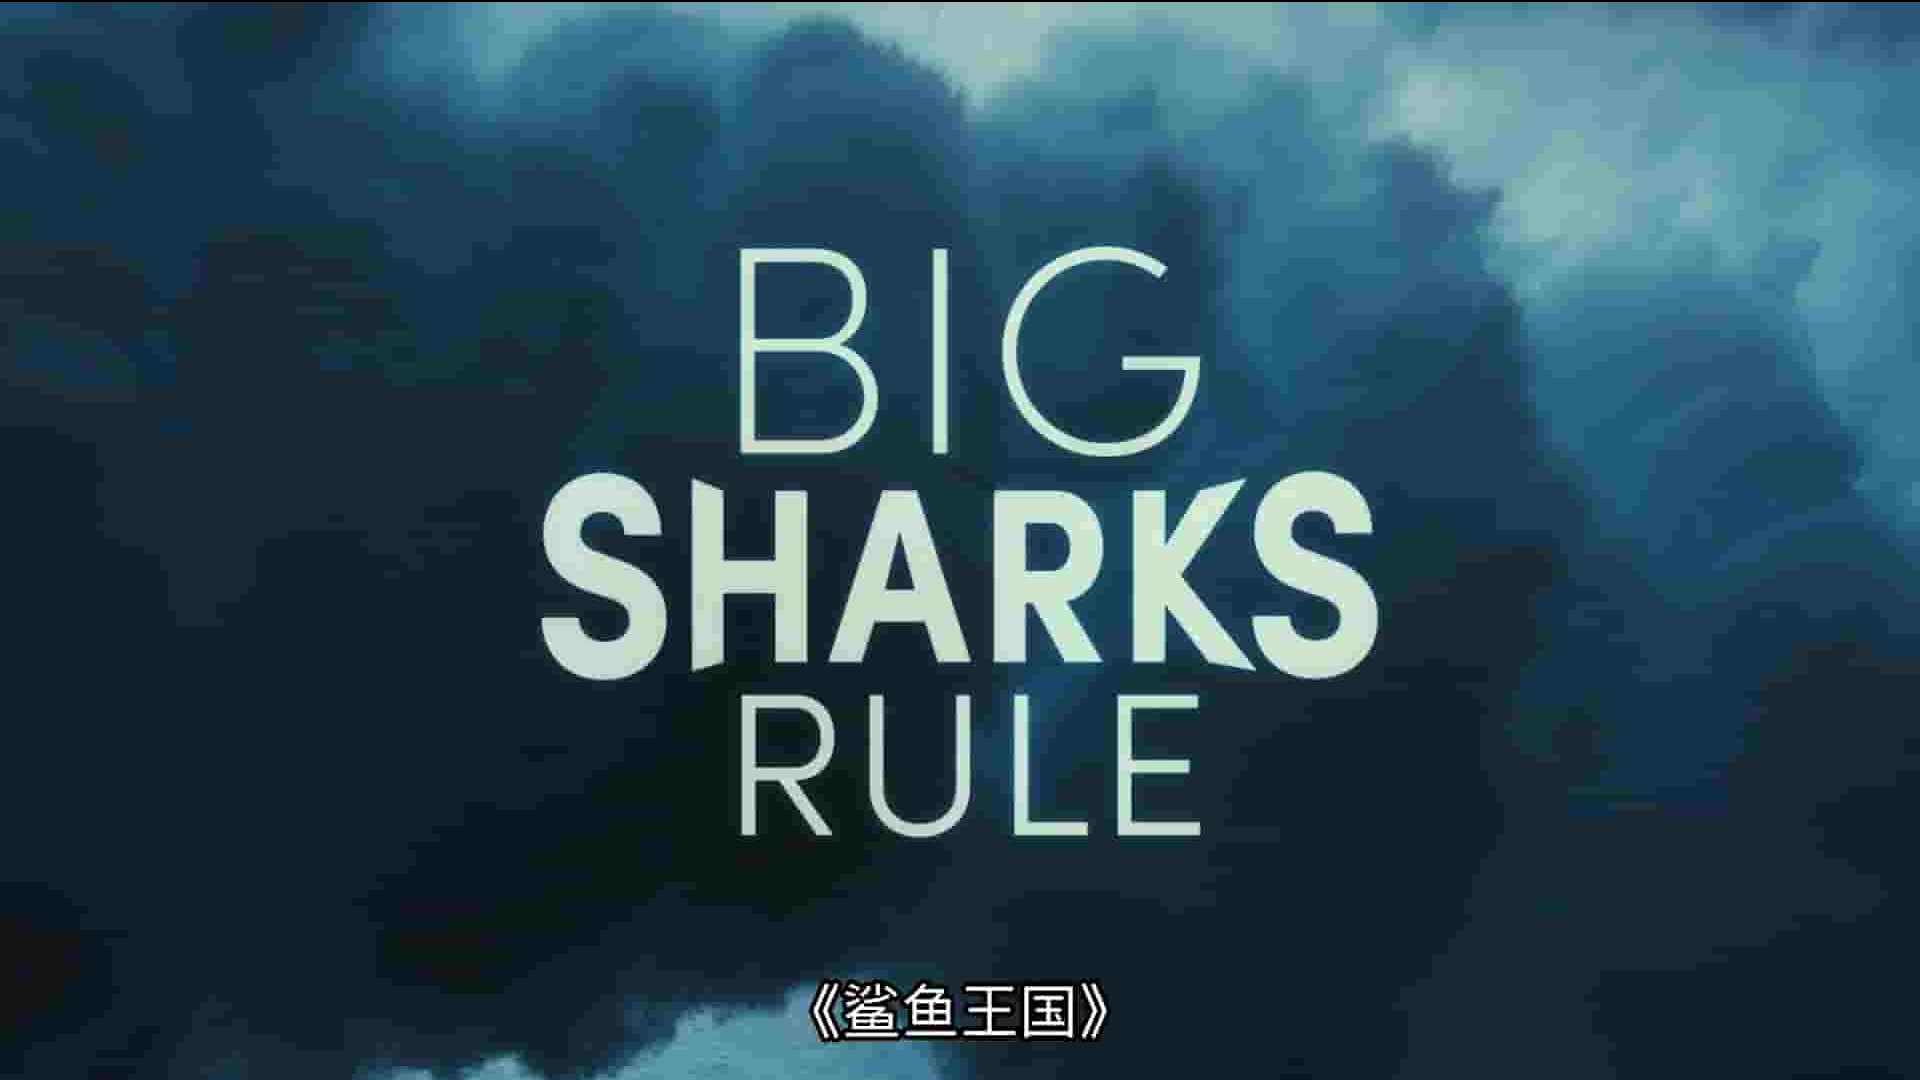 国家地理《鲨鱼王国 Big Sharks Rule 2018》全1集 英语多国中字 1080P高清网盘下载